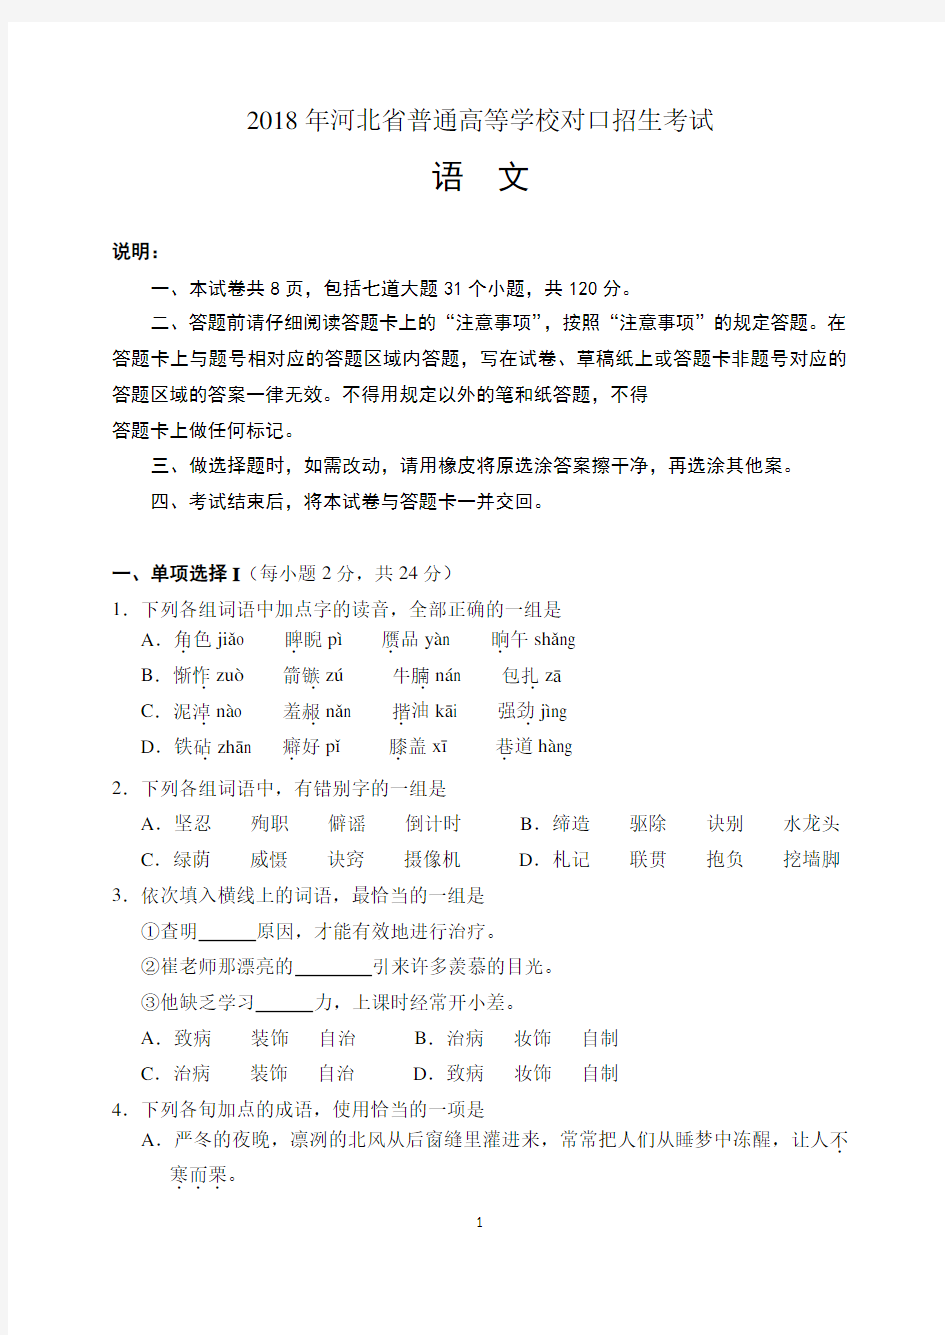 2018年河北省普通高等学校对口招生考试试题及答案